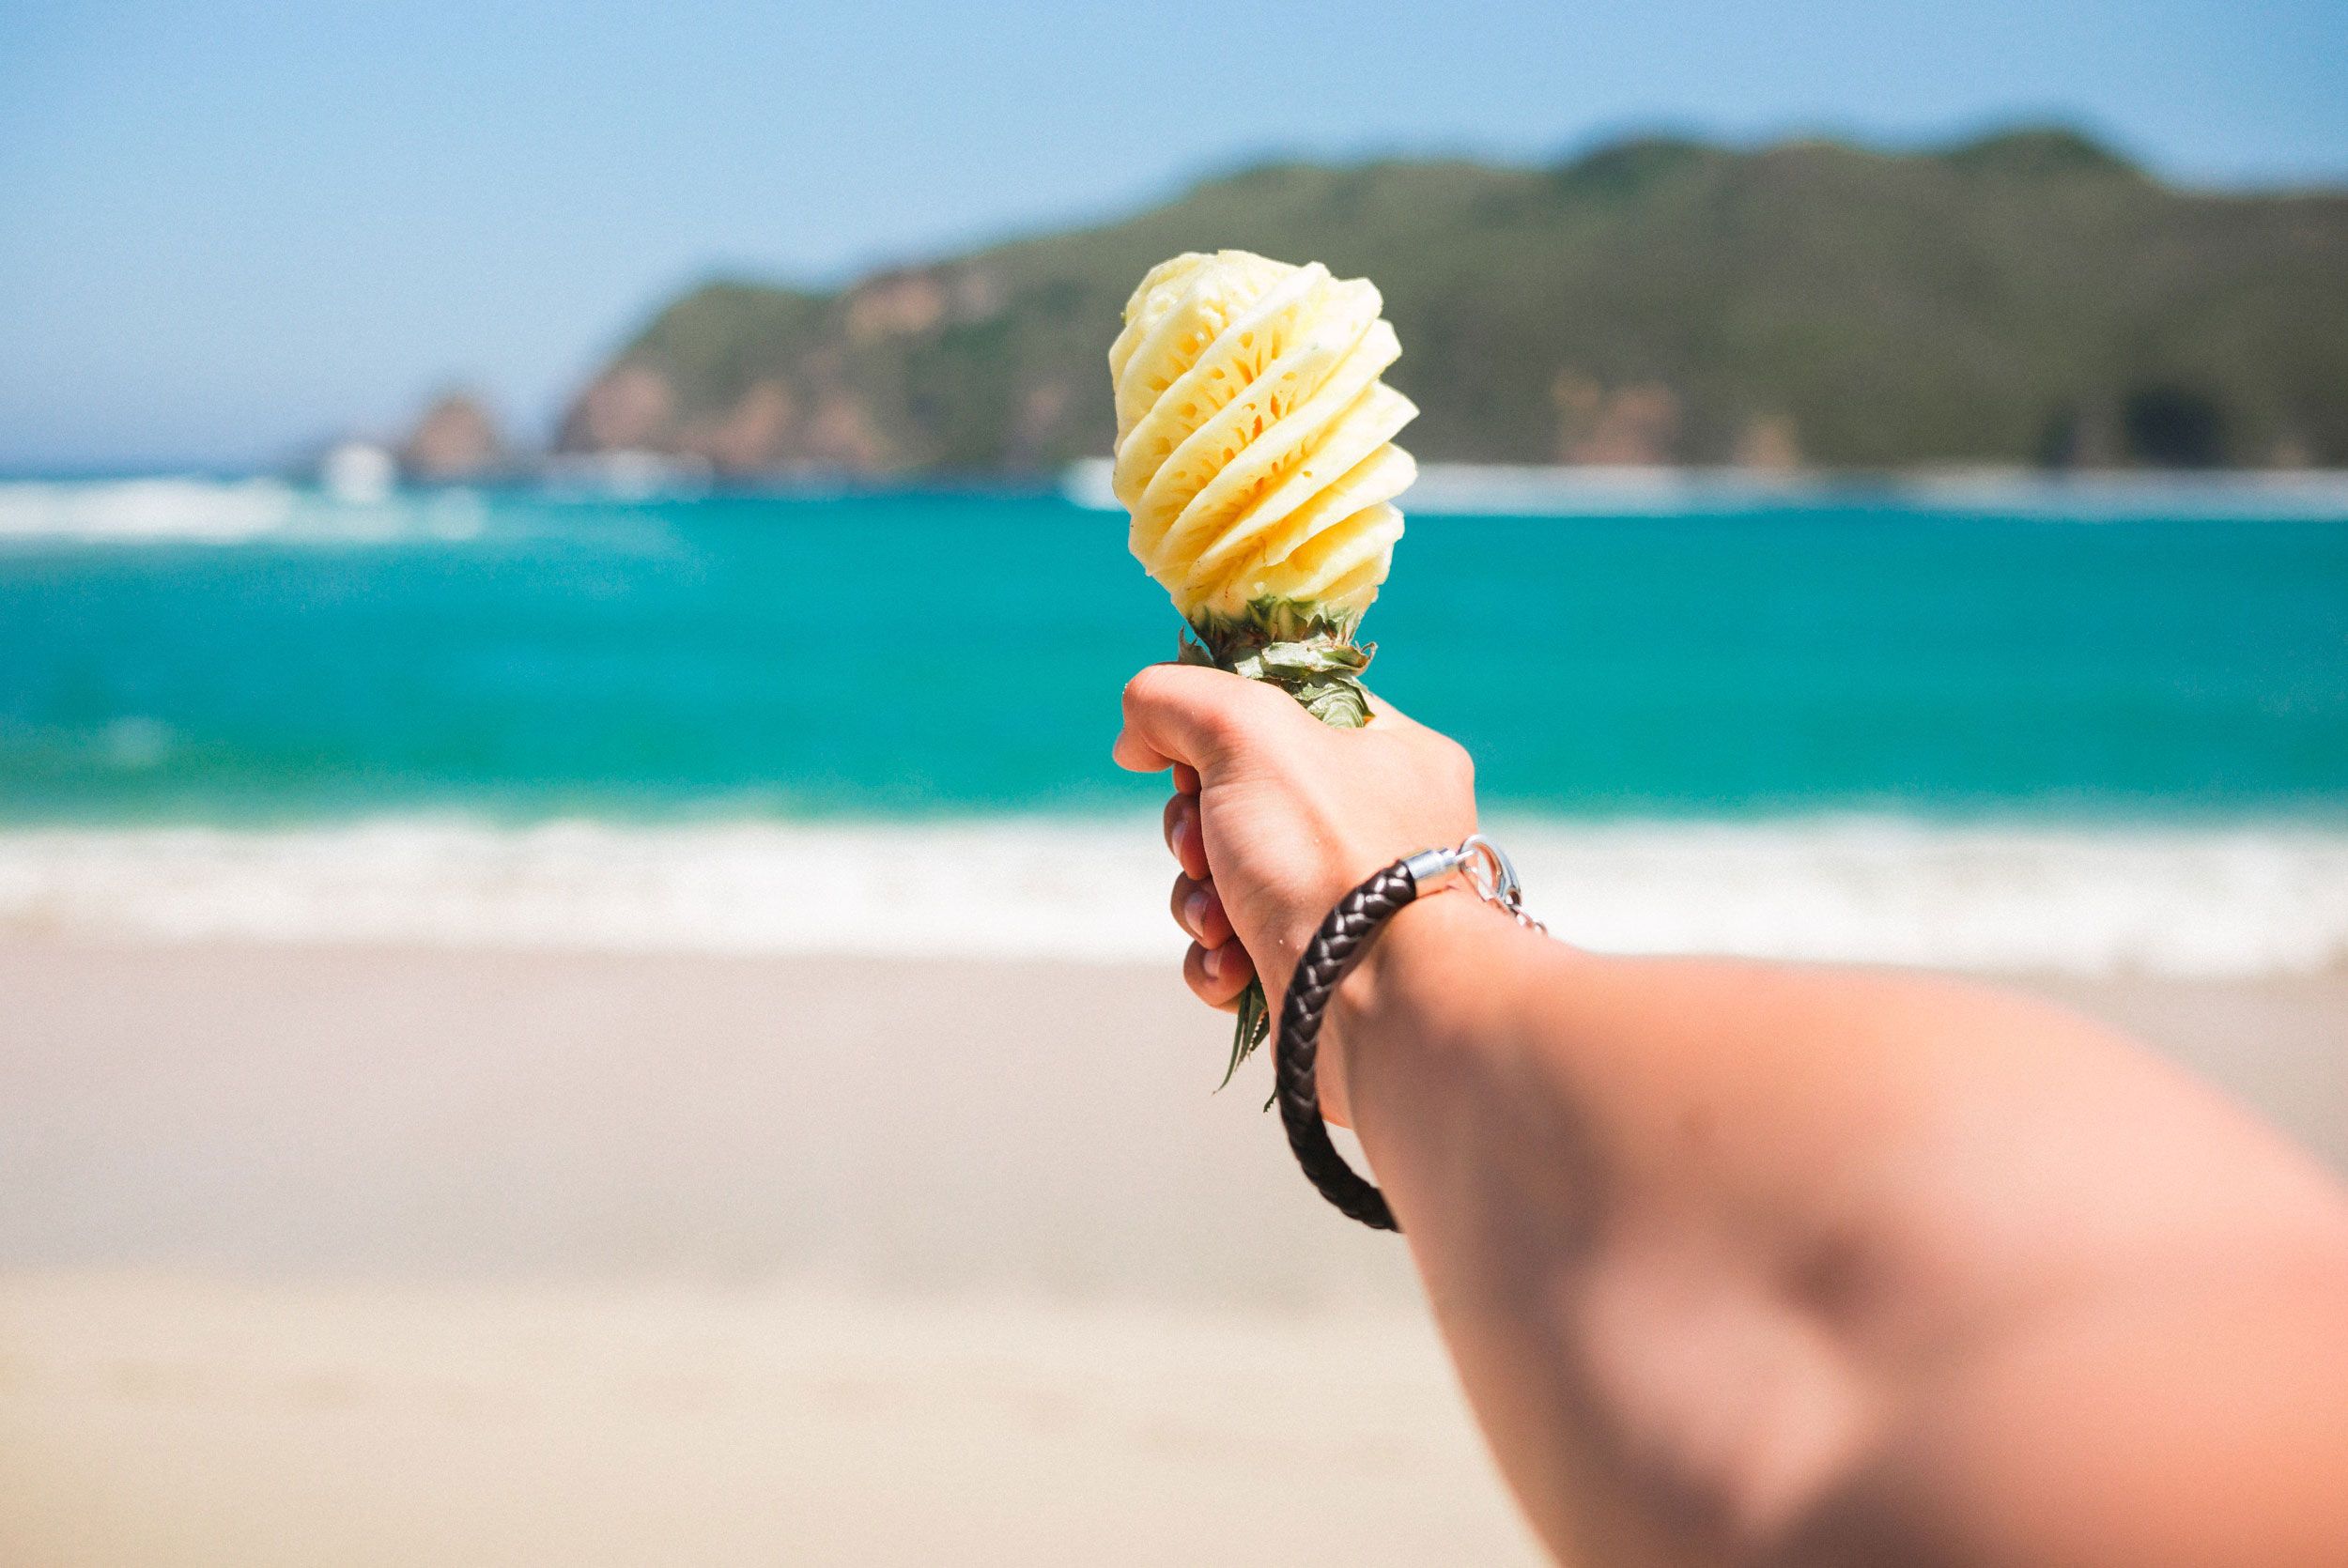 Ein ausgestreckter Arm hält eine Ananas, die wie ein Mikrophon geschnitzt ist, in Richtung Strand